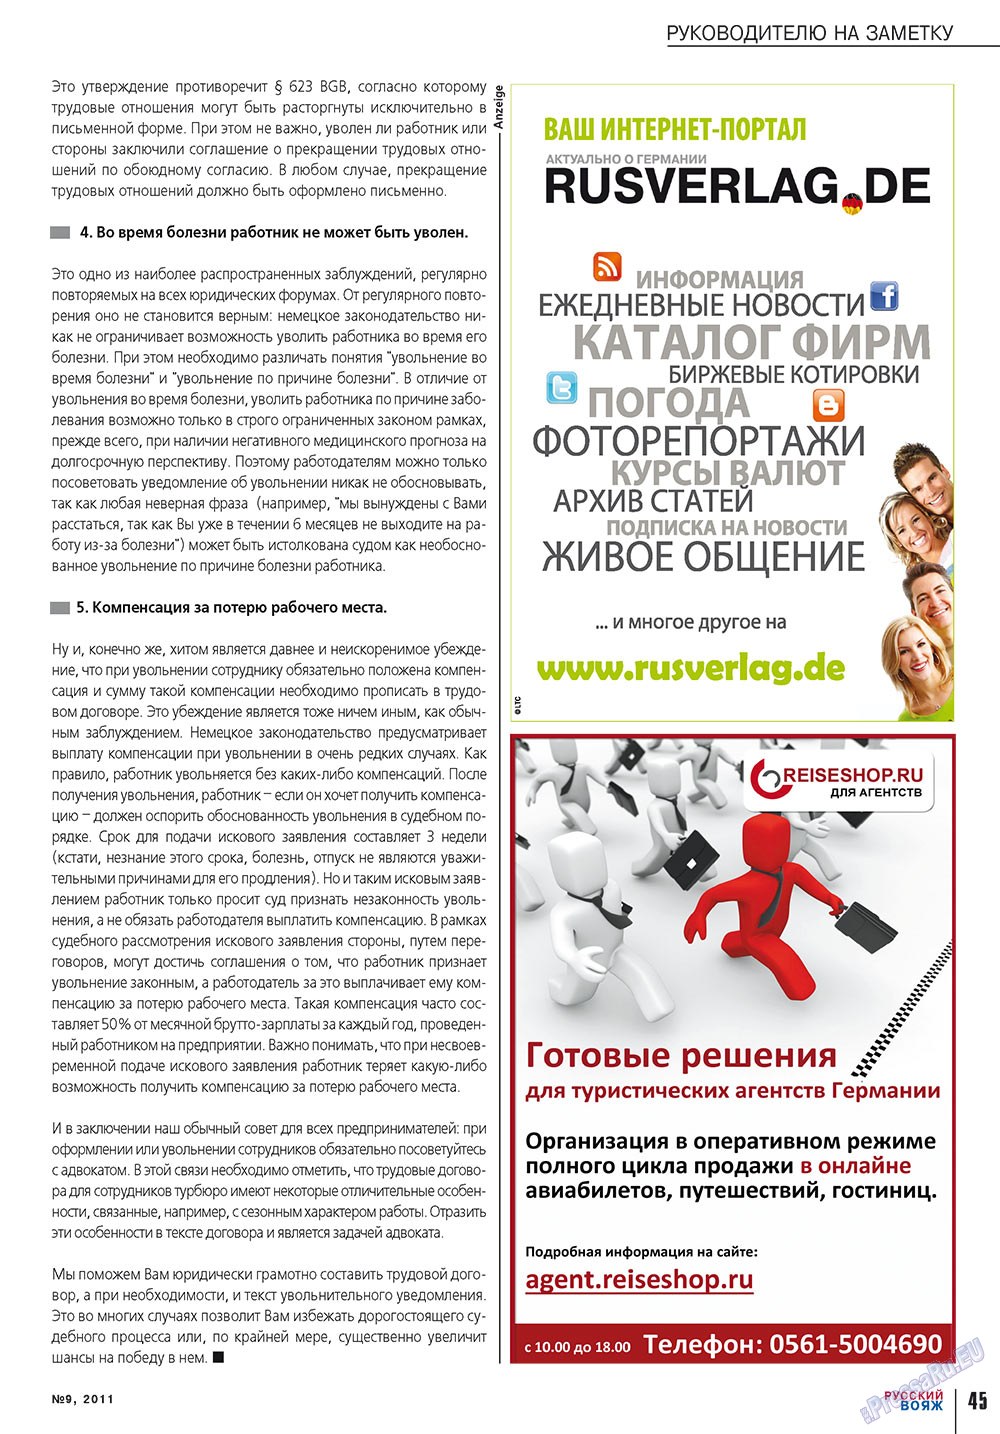 Русский вояж (журнал). 2011 год, номер 9, стр. 45